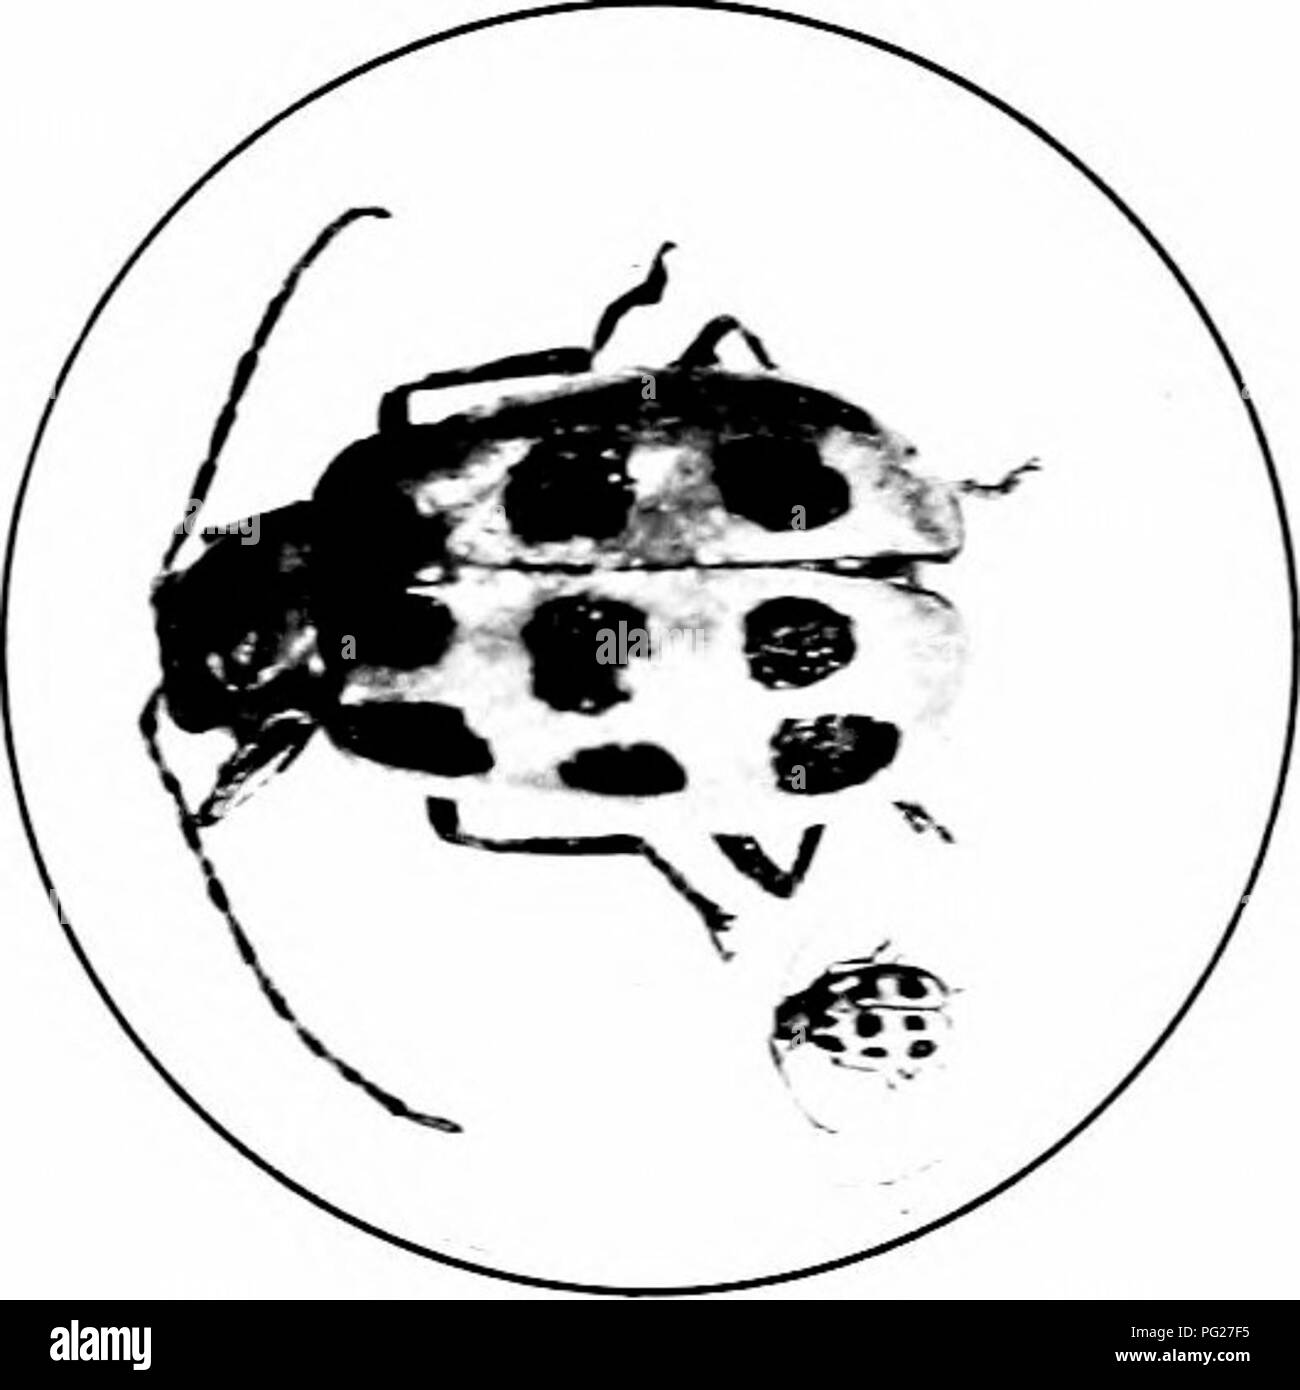 . Schädigende Insekten: Wie zu erkennen und zu steuern. Insekten und Schädlinge. 152 FESTS von GIEBELN ASB FELDFRÜCHTE die Zwölf-beschmutzte Gurke Käfer (Diahrotica duodtcimpundata Oliv.) Dieses Insekt, seiner LAN-' al-Bühne, im Süden als der südliche com root-Worm, wo es ist eine Plage von Com und anderen Feldfrüchten bekannt ist. In den zentralen und nördlichen Regionen Schädigung durch die erwachsenen Käfer ist mehr oft festgestellt, die Kulturen an, heftete, Gurke, Melone, scjuash. rote Rüben, Kohl - in der Tat, fast jede Art von "^" egetable. Die Käfer sind vor allem die teilweise zu den blühenden Teilen der Pla Stockfoto